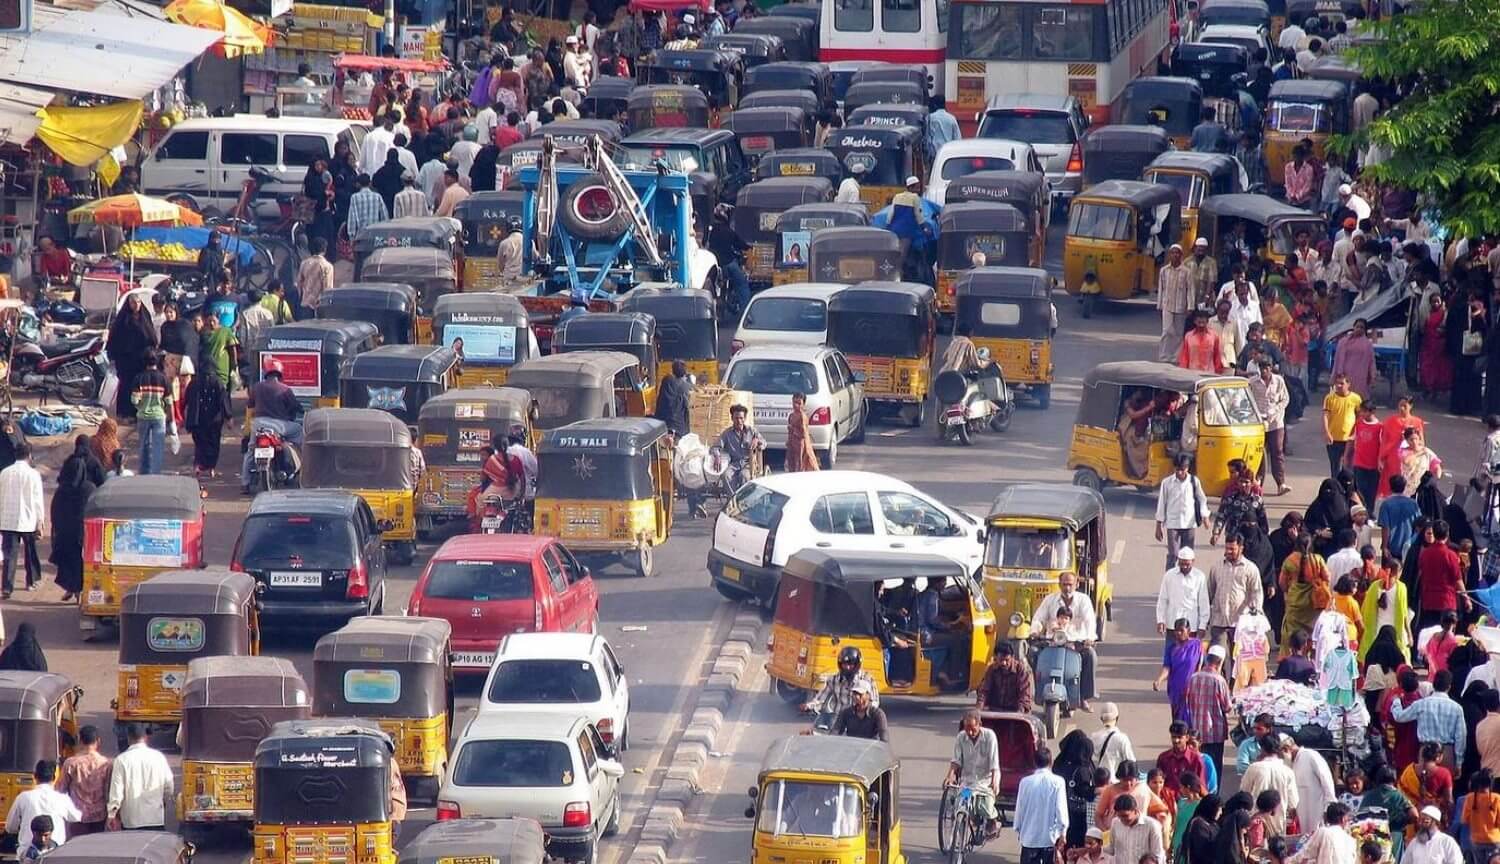 भारत चाहता है करने के लिए स्विच करने के लिए बिजली परिवहन. स्कूटर के साथ आंतरिक दहन इंजन पर प्रतिबंध लगा दिया जाएगा?